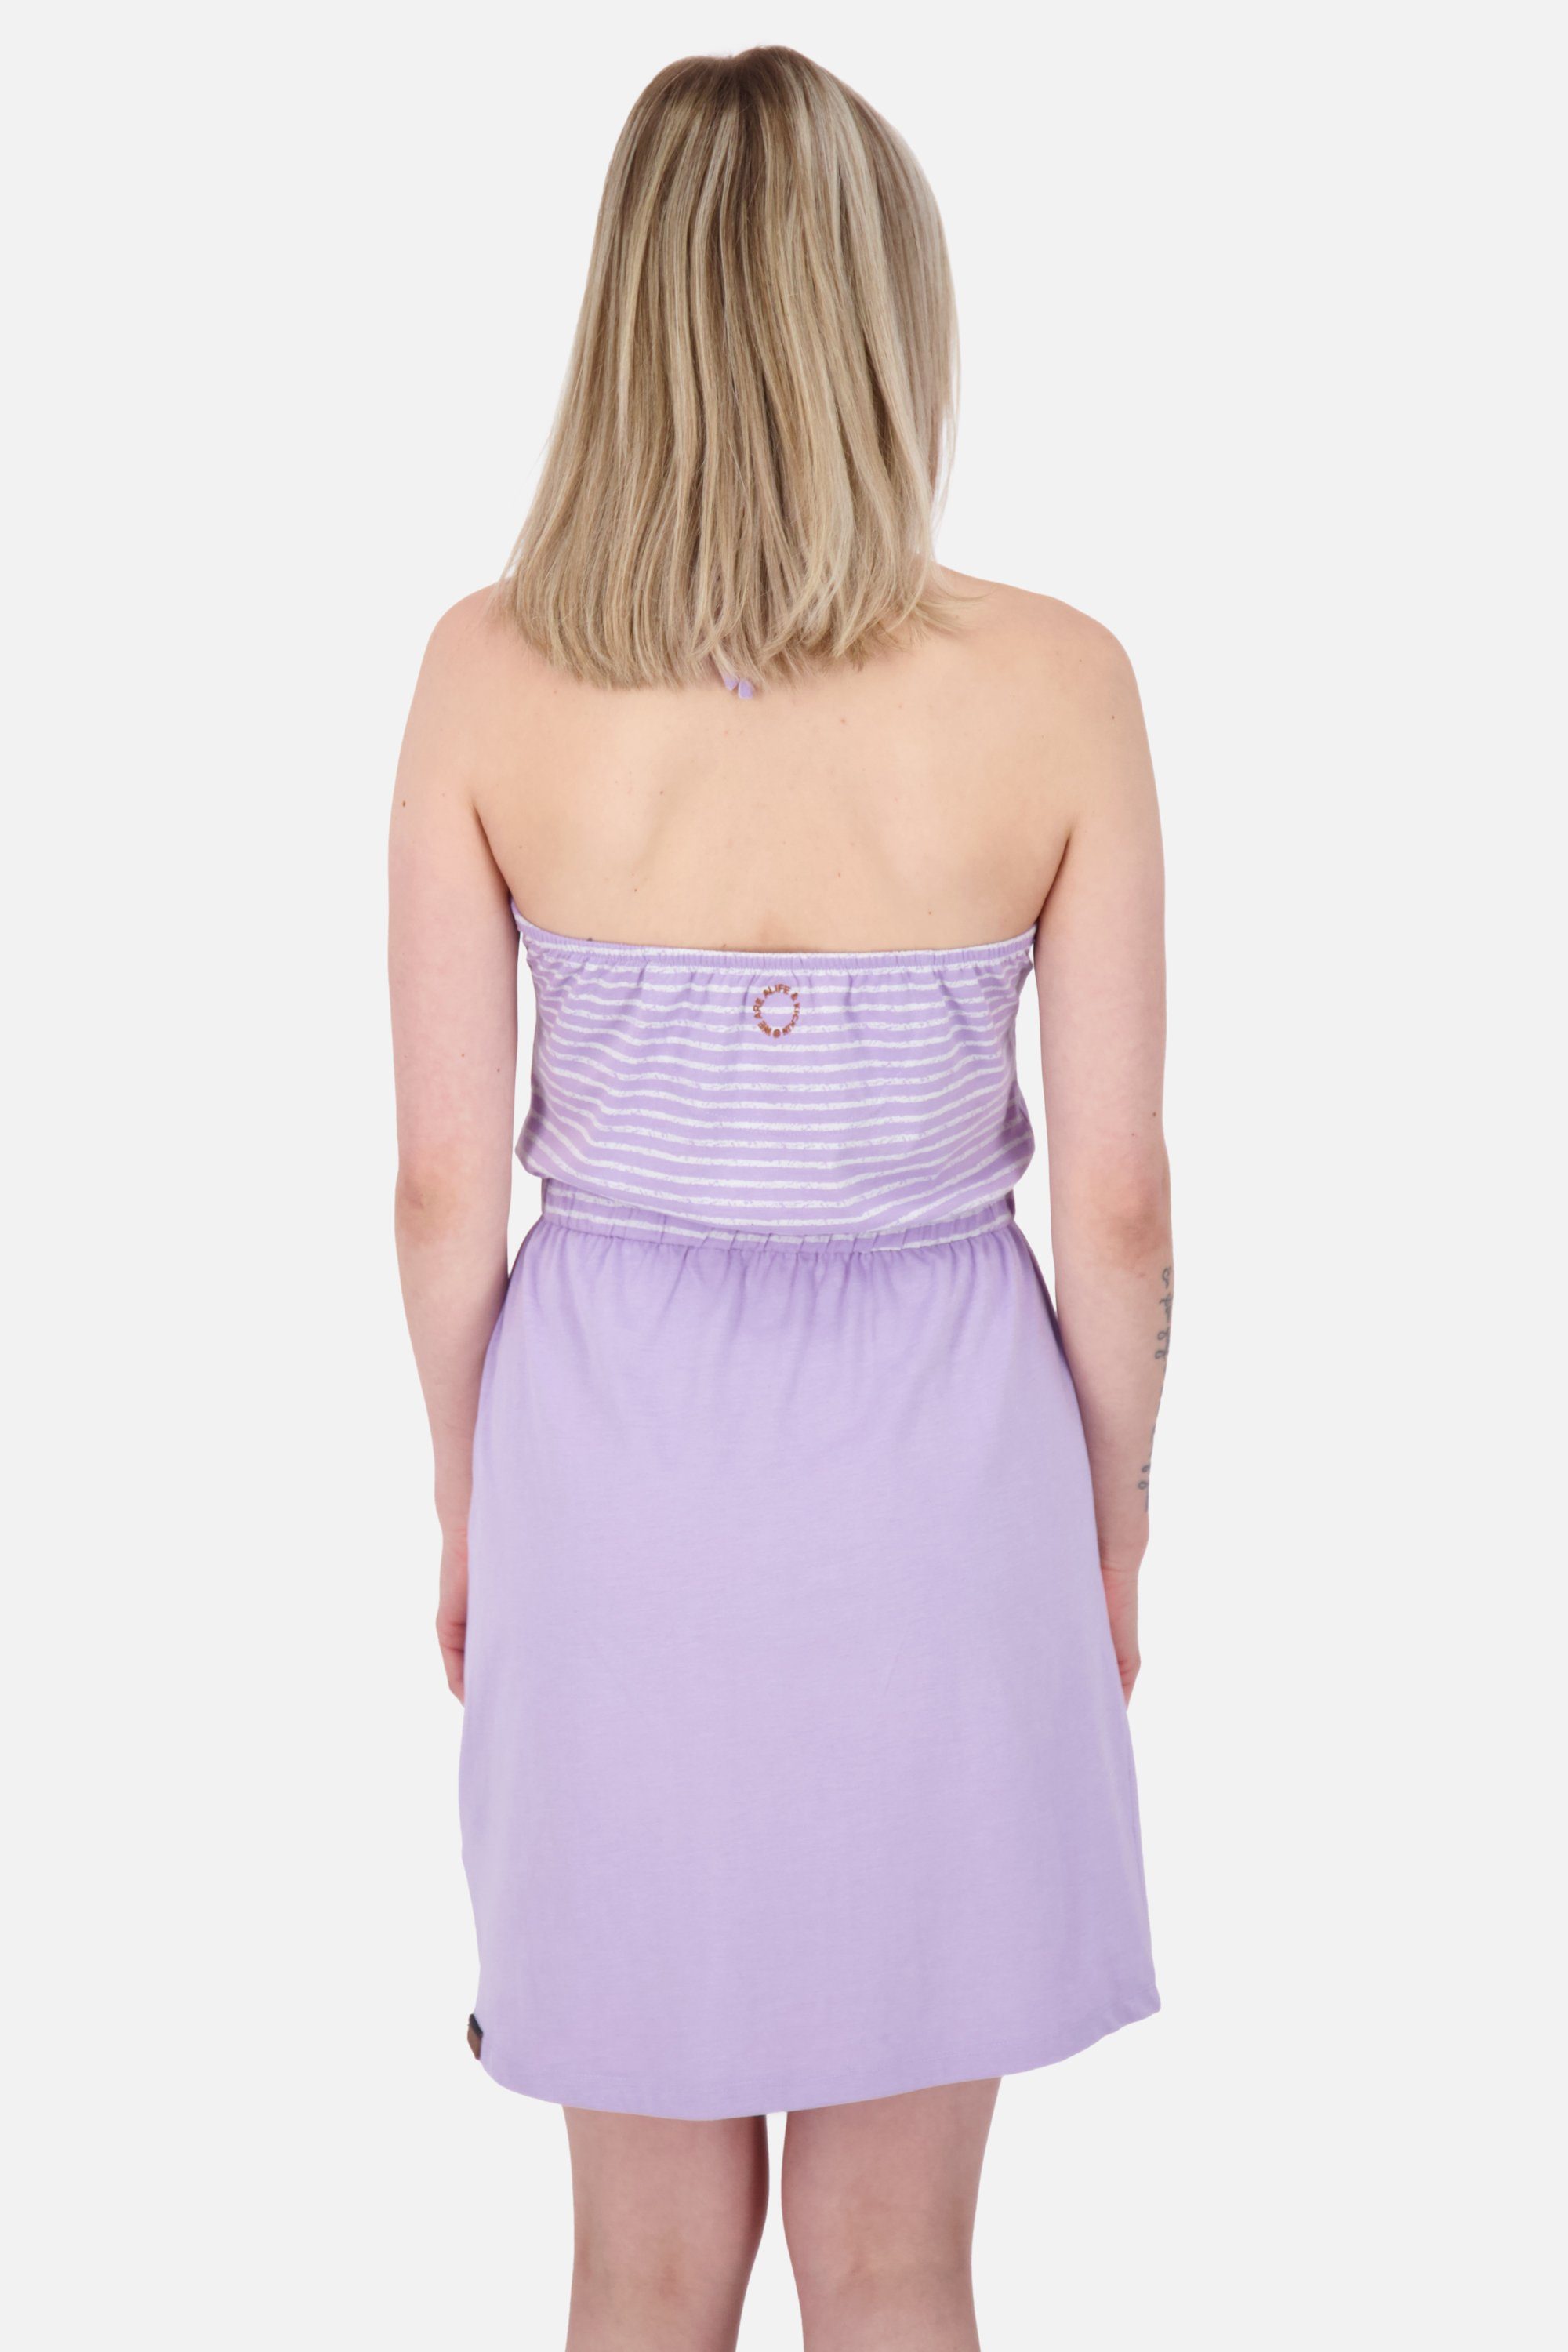 Alife & Kickin VerenaAK Sommerkleid, Damen Dress Kleid lavender Sleeveless Z Sommerkleid digital